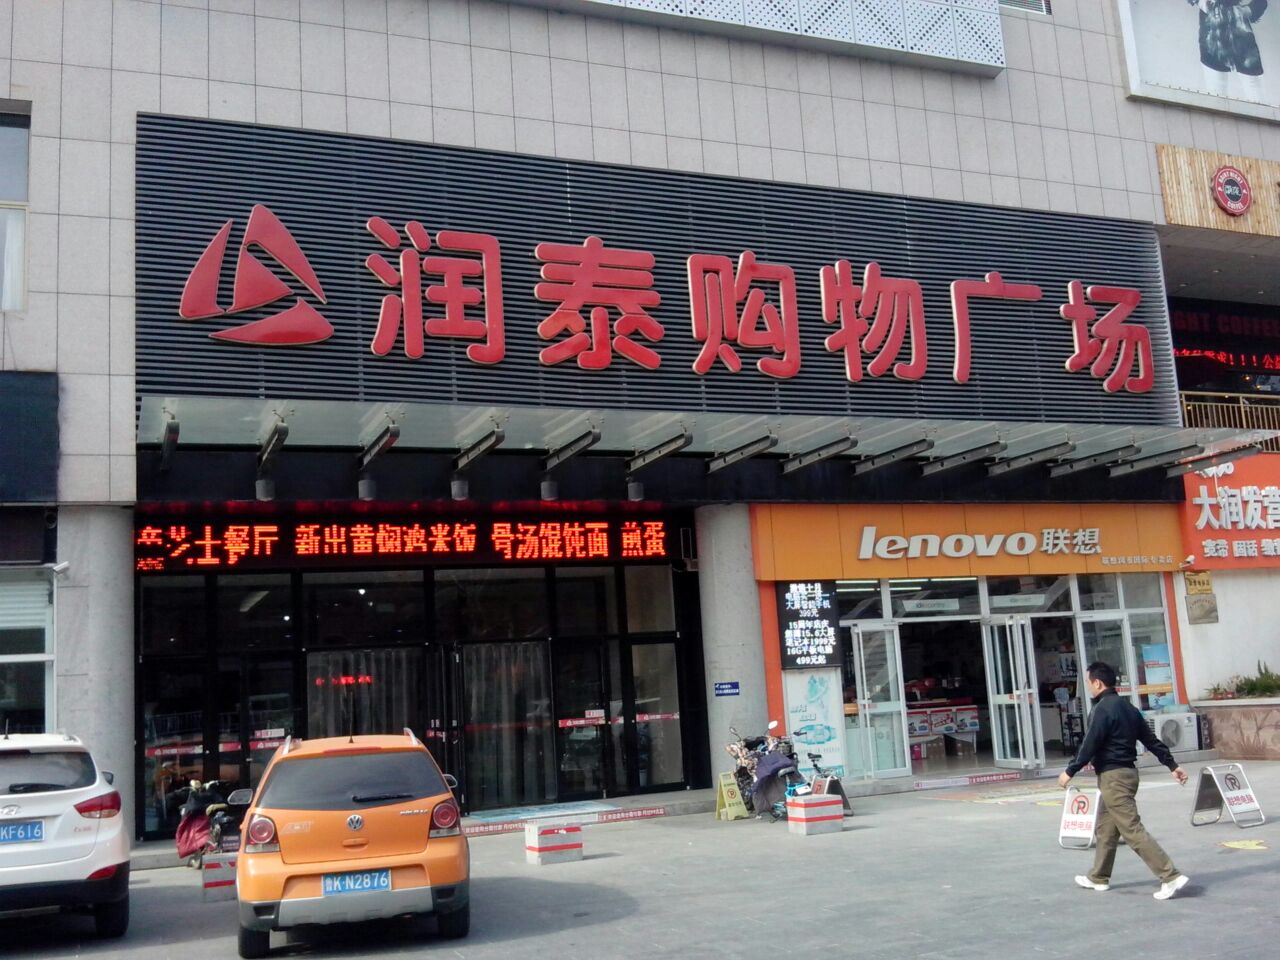 文登区标签: 购物 超市 购物中心  润泰购物广场(三里河路店)共多少人